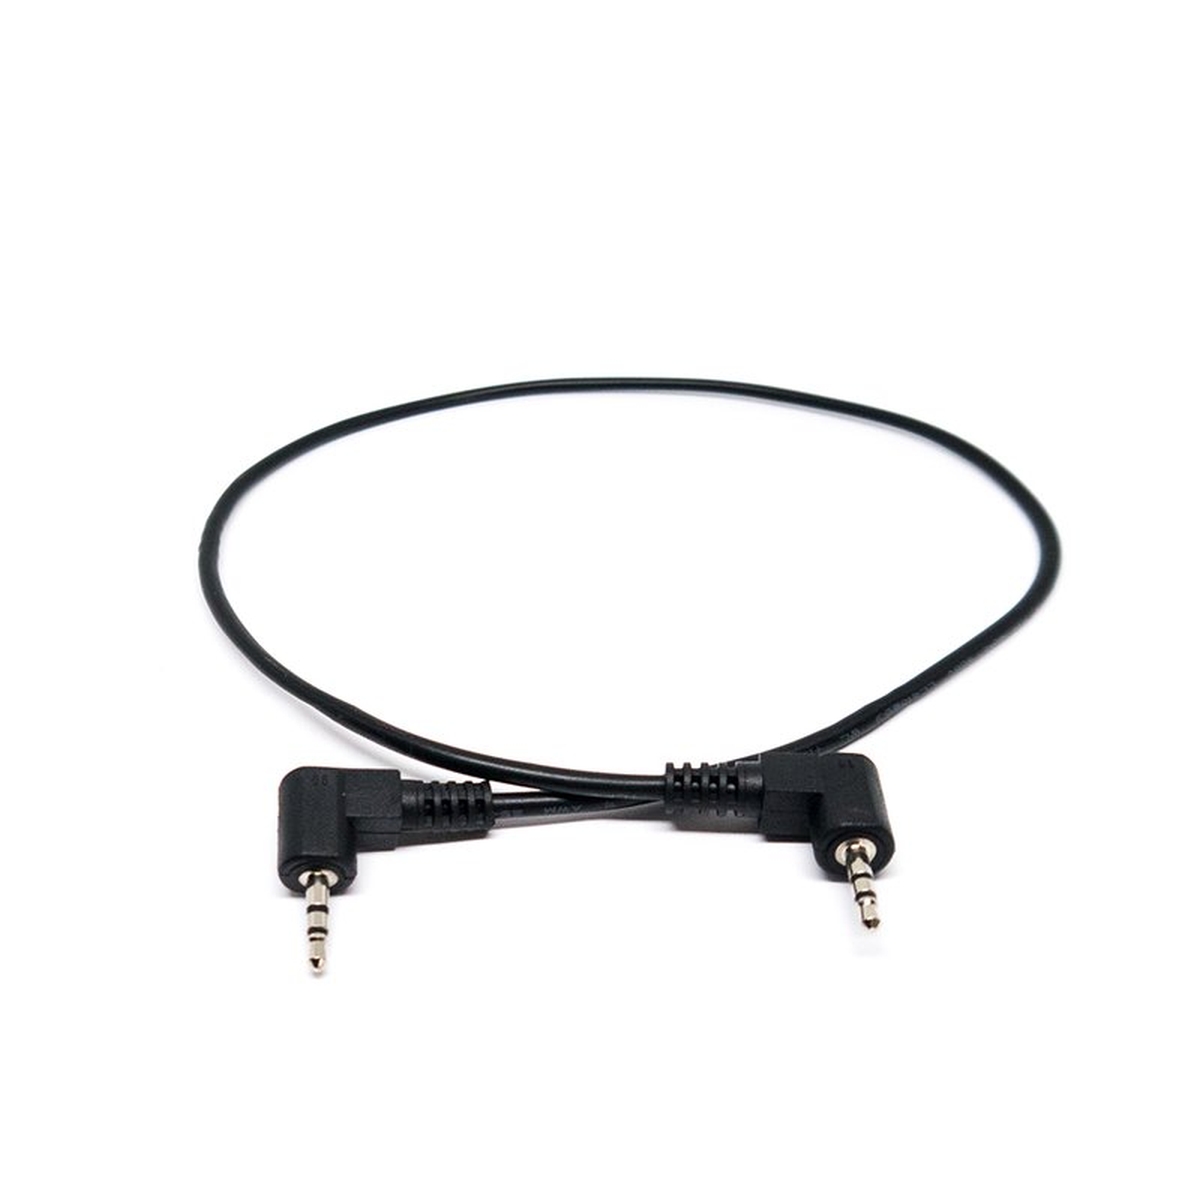 Blackmagic Cable - Lanc 180 mm